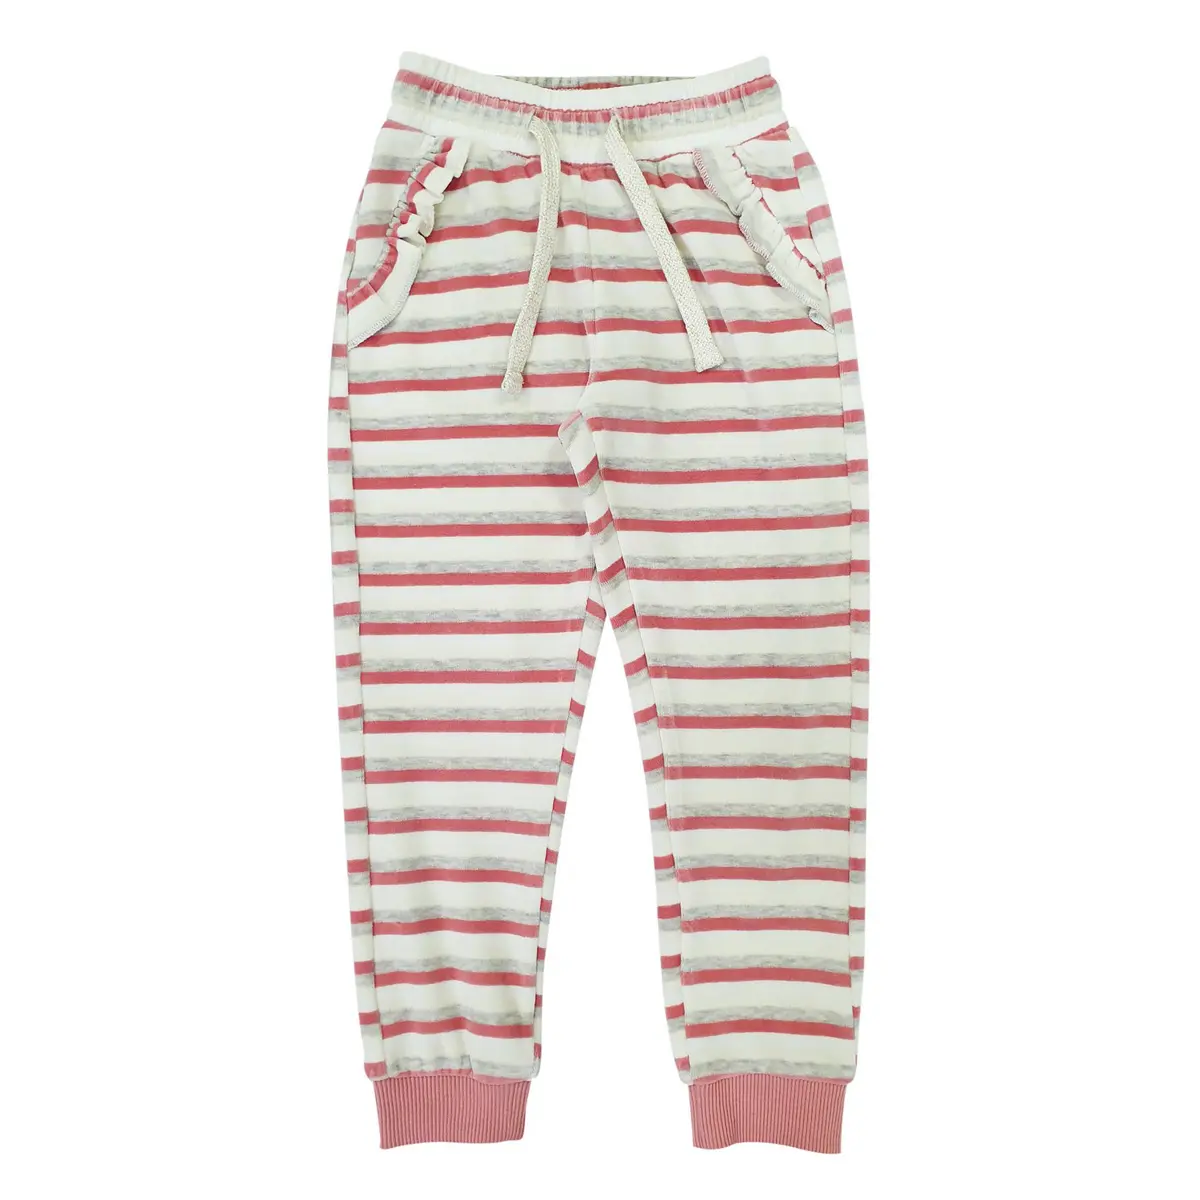 カジュアルスタイルの女の子用パンツ子供用パンツ卸売価格コットンホワイトとピンクの伸縮性ウエスト/足首